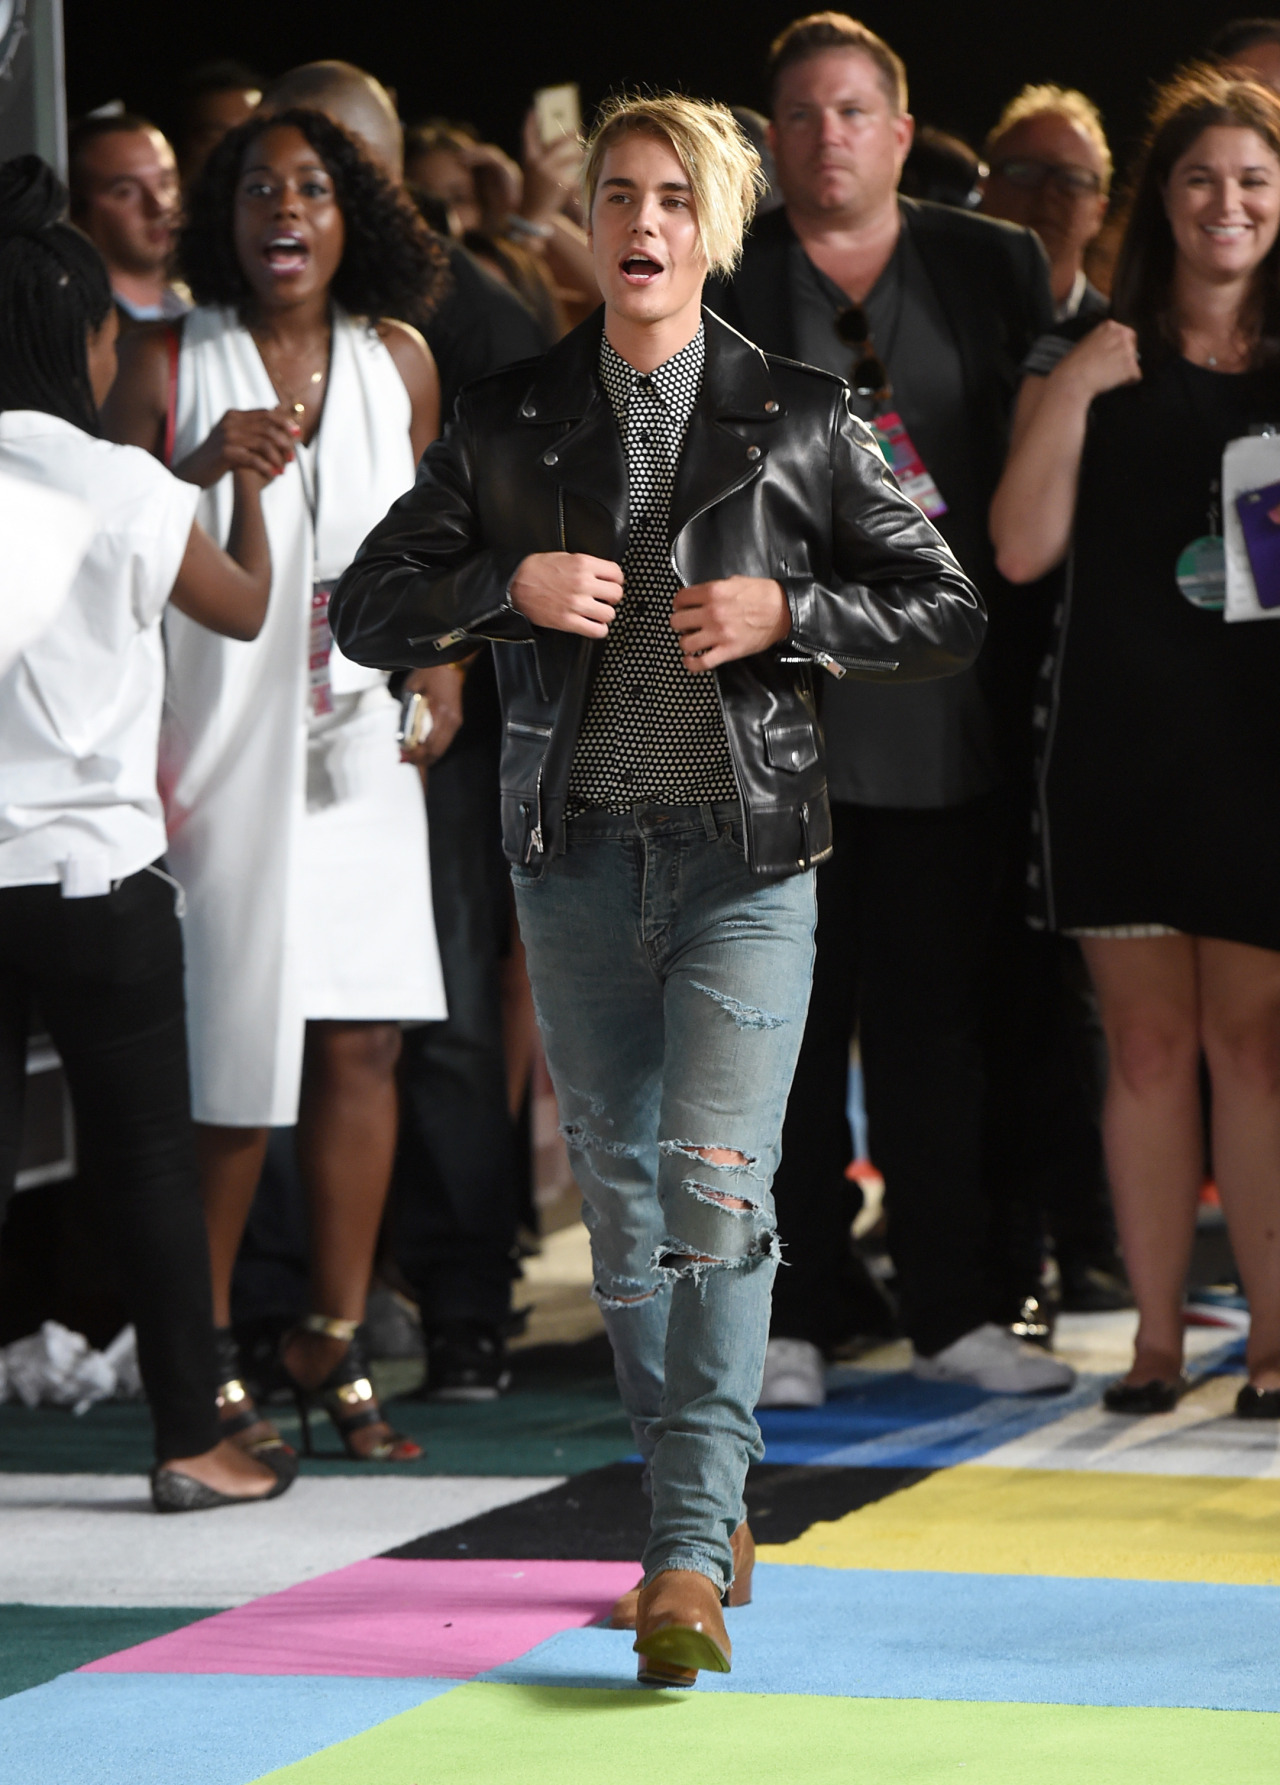 جاستین بـیـبـر در فرش قرمز مراسم MTV Video Music Awards 2015 1